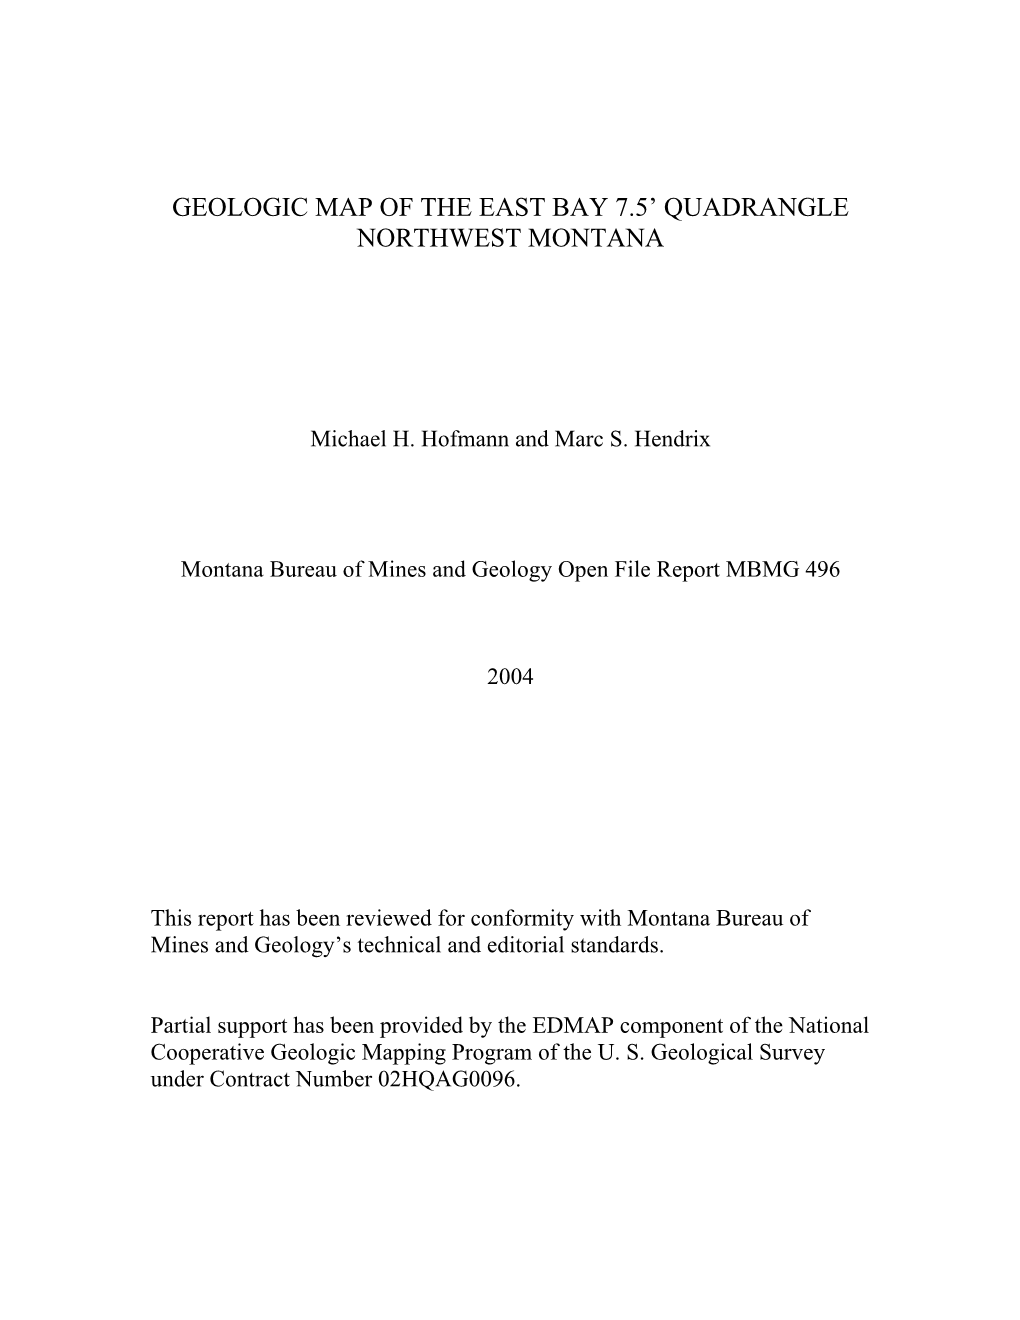 Geologic Map of the East Bay 7.5' Quadrangle